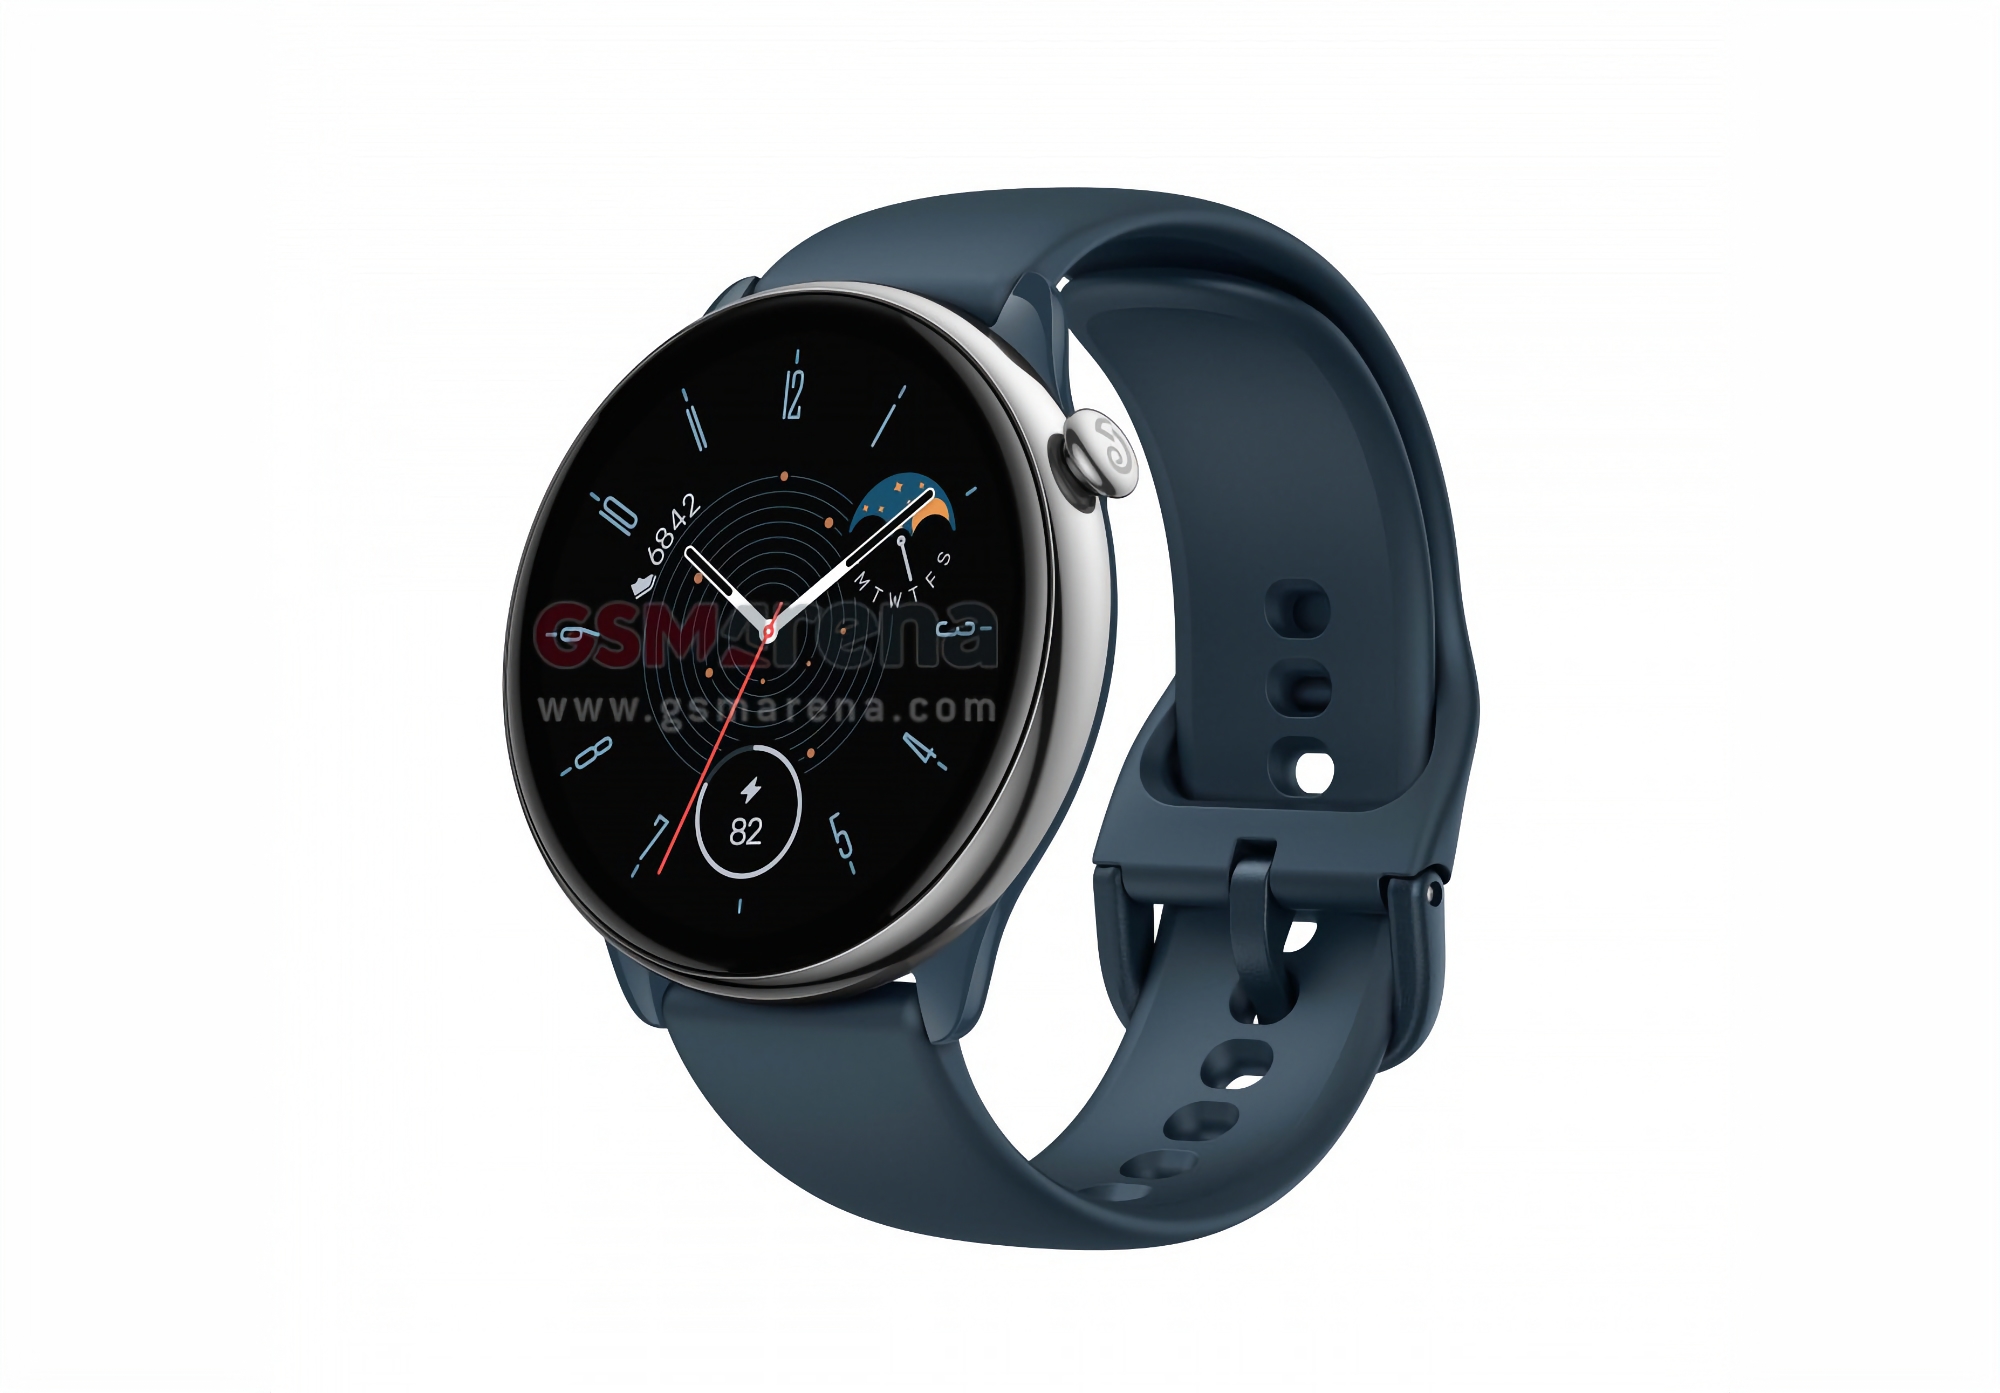 Amazfit lanza el smartwatch GTR Mini con pantalla AMOLED, GPS, sensor SpO2 y Zepp OS a bordo